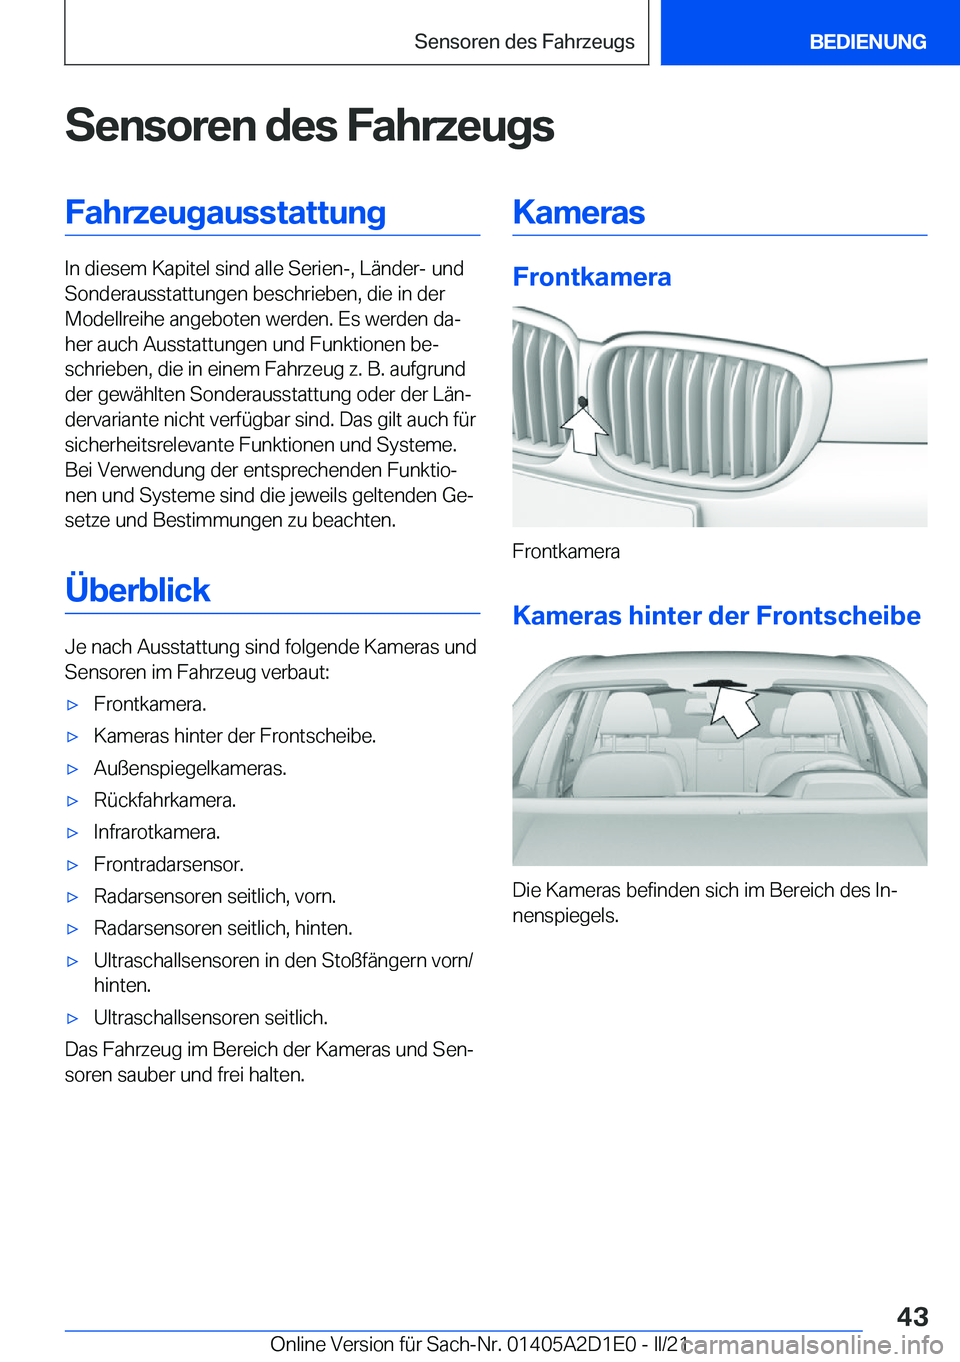 BMW X6 M 2021  Betriebsanleitungen (in German) �S�e�n�s�o�r�e�n��d�e�s��F�a�h�r�z�e�u�g�s�F�a�h�r�z�e�u�g�a�u�s�s�t�a�t�t�u�n�g
�I�n��d�i�e�s�e�m��K�a�p�i�t�e�l��s�i�n�d��a�l�l�e��S�e�r�i�e�n�-�,��L�